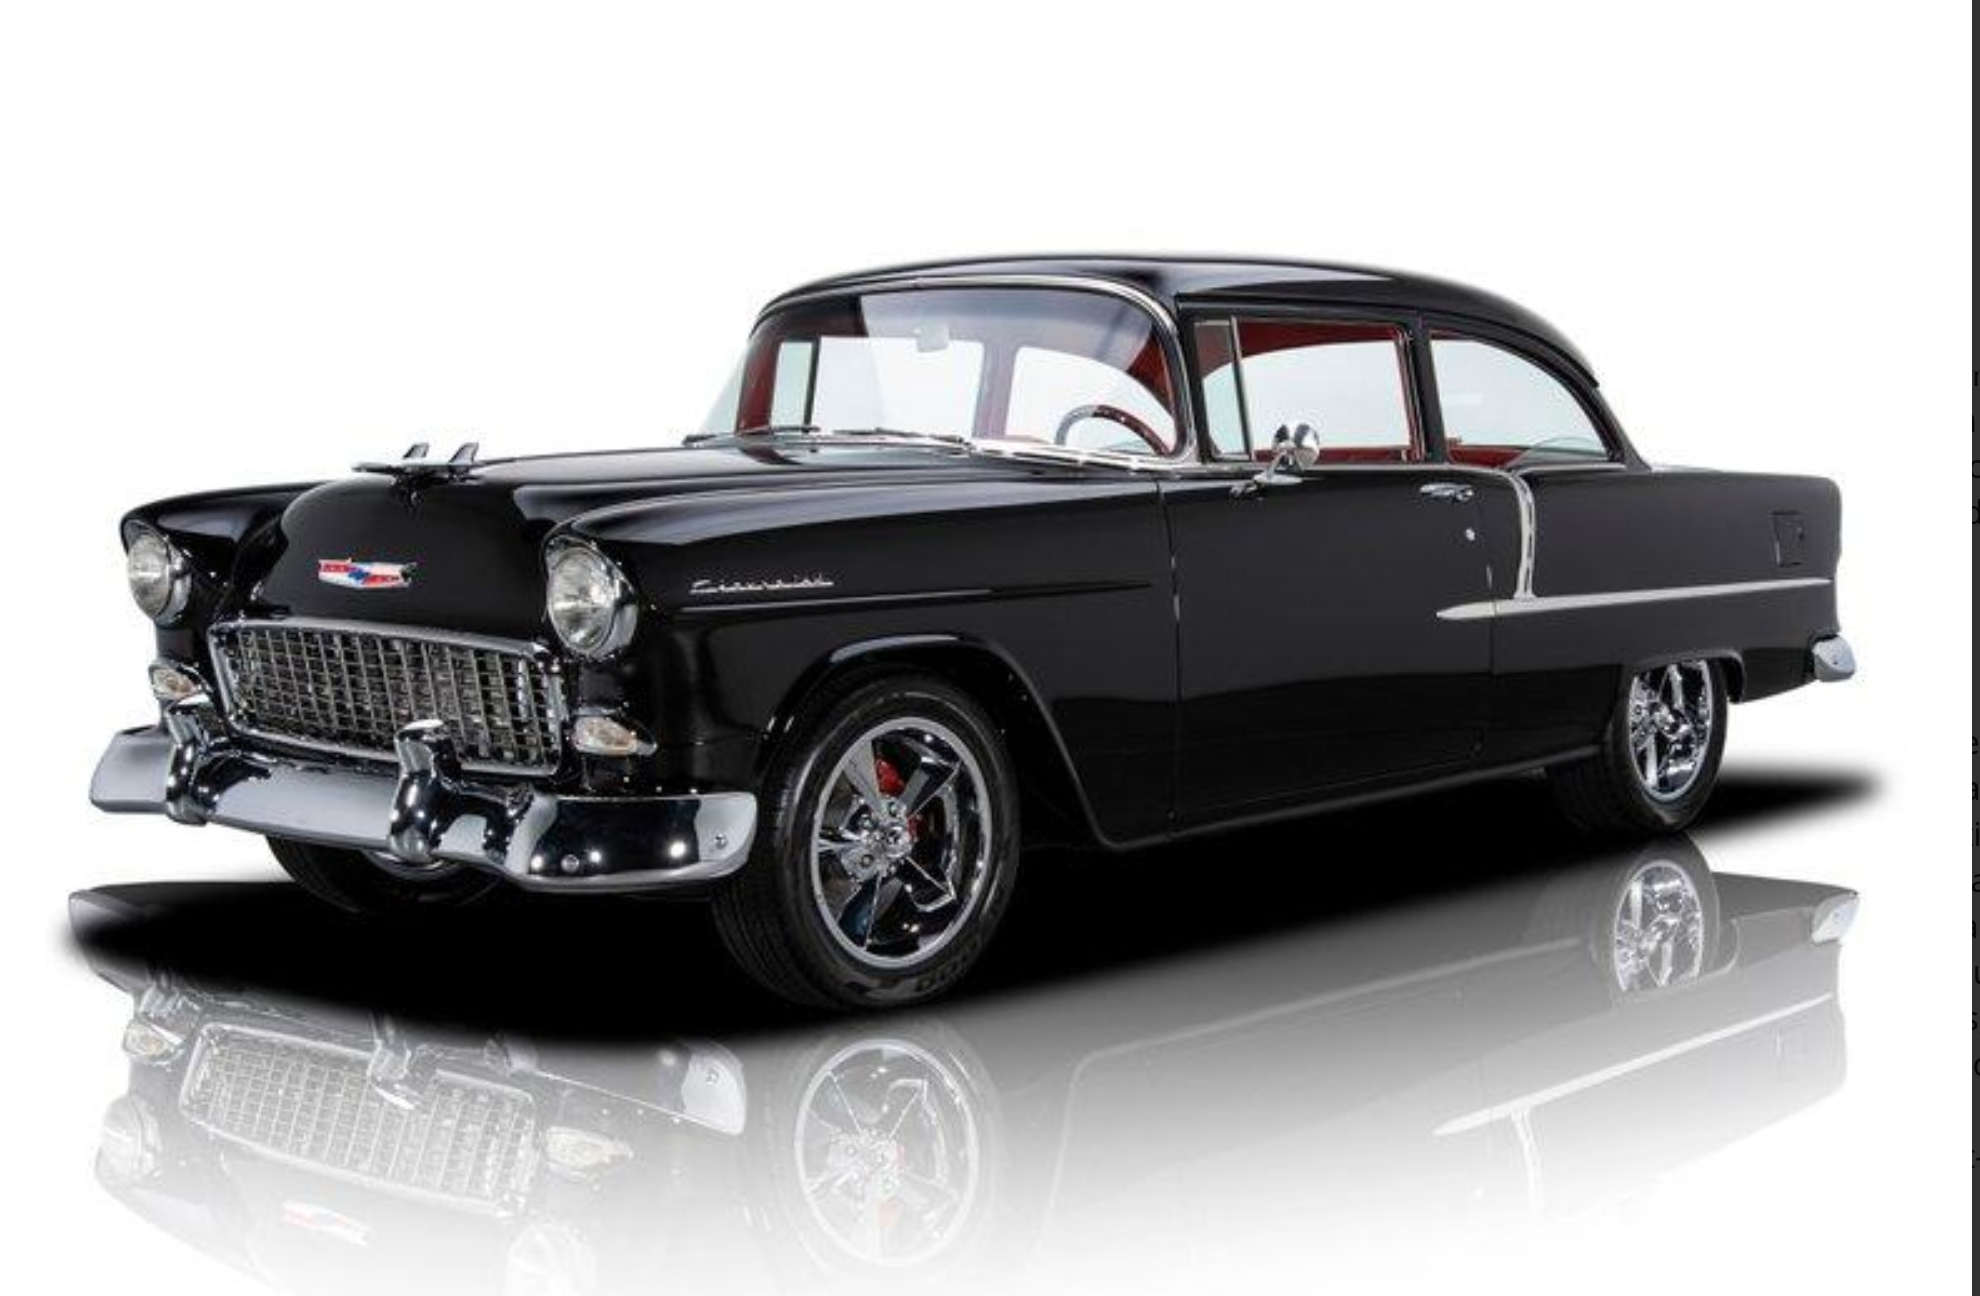 1955 Chevrolet 210 Sunnyside Classics #1 Classic Car Dealership In Ohio ...